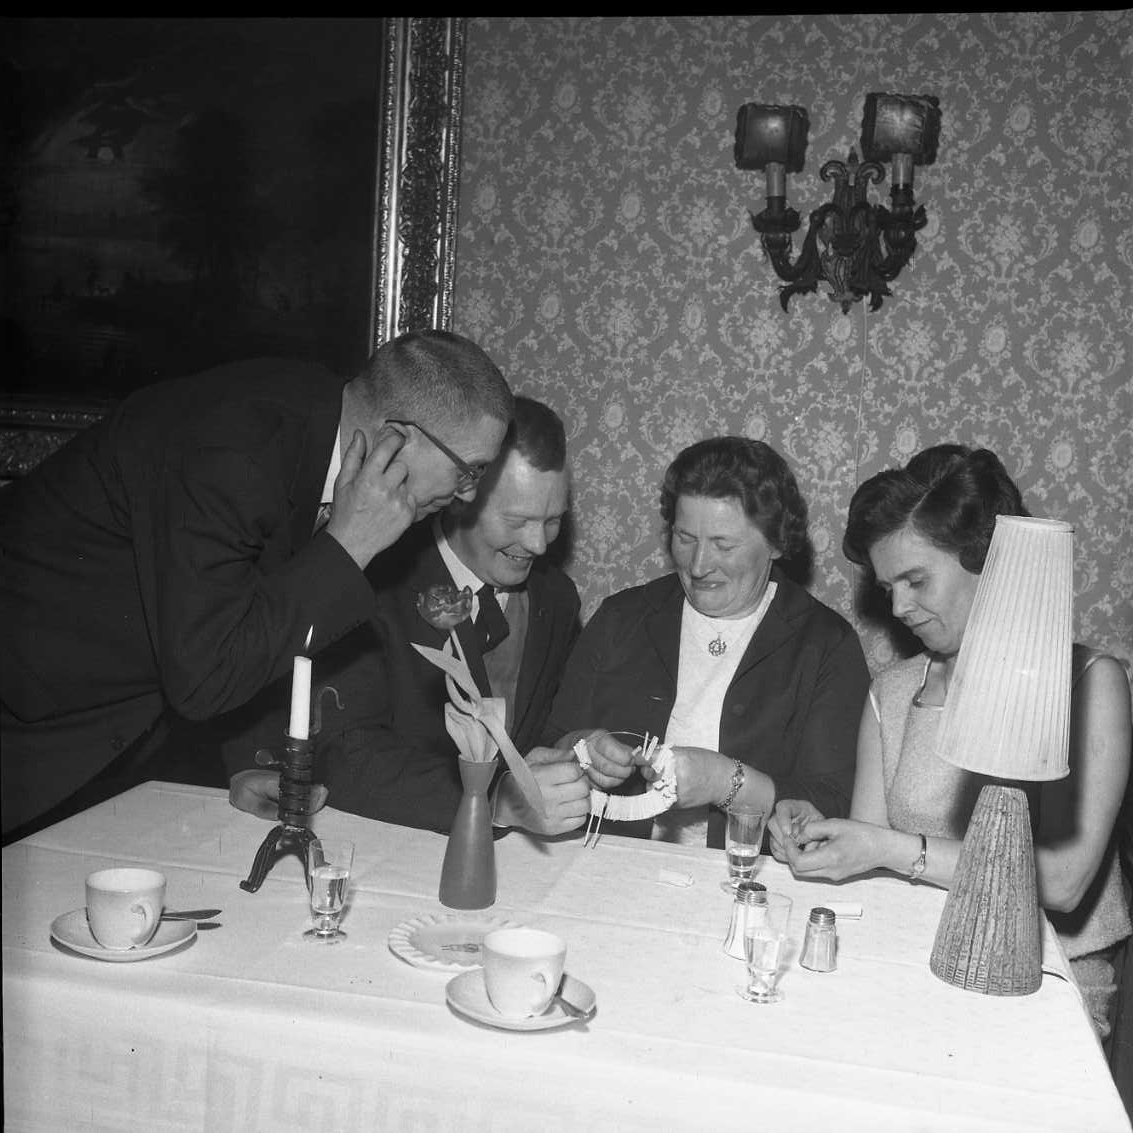 Två festklädda skrattande kvinnor sitter vid ett bord med kaffekoppar, bordslampa och tänt ljus. De köper och rullar upp lotter som de köper av en man som sitter intill dem till vänster. En andra man står lutad över dem från samma sida. Han håller ett finger över höger öra som för att höra bättre.